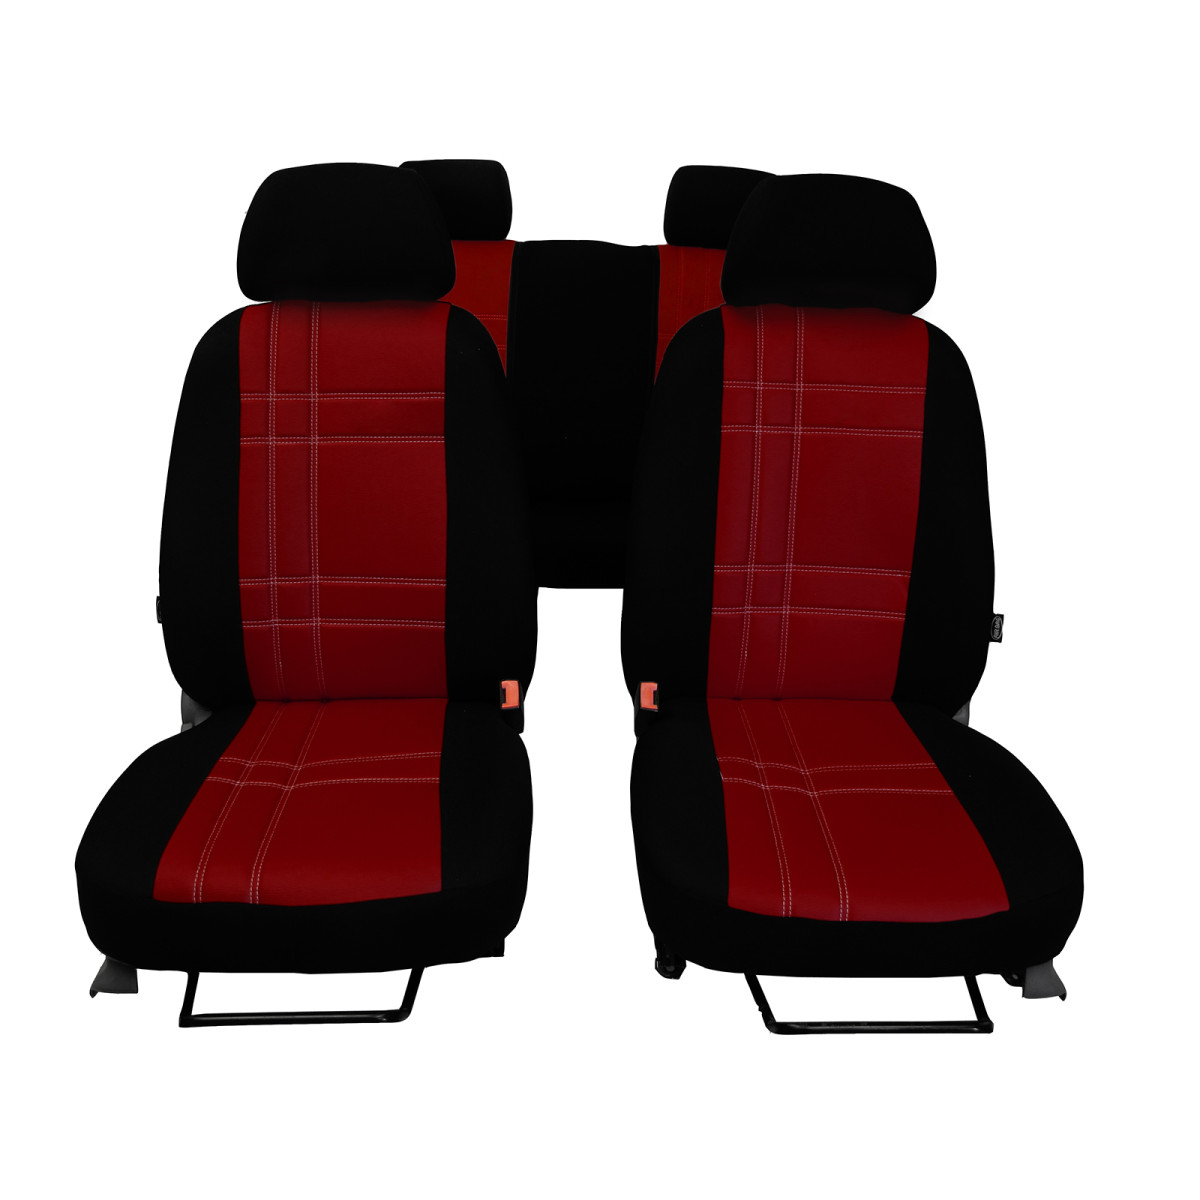 S-TYPE sitzbezüge (öko-leder) Mercedes-Benz C Klasse W204 (Kombi)